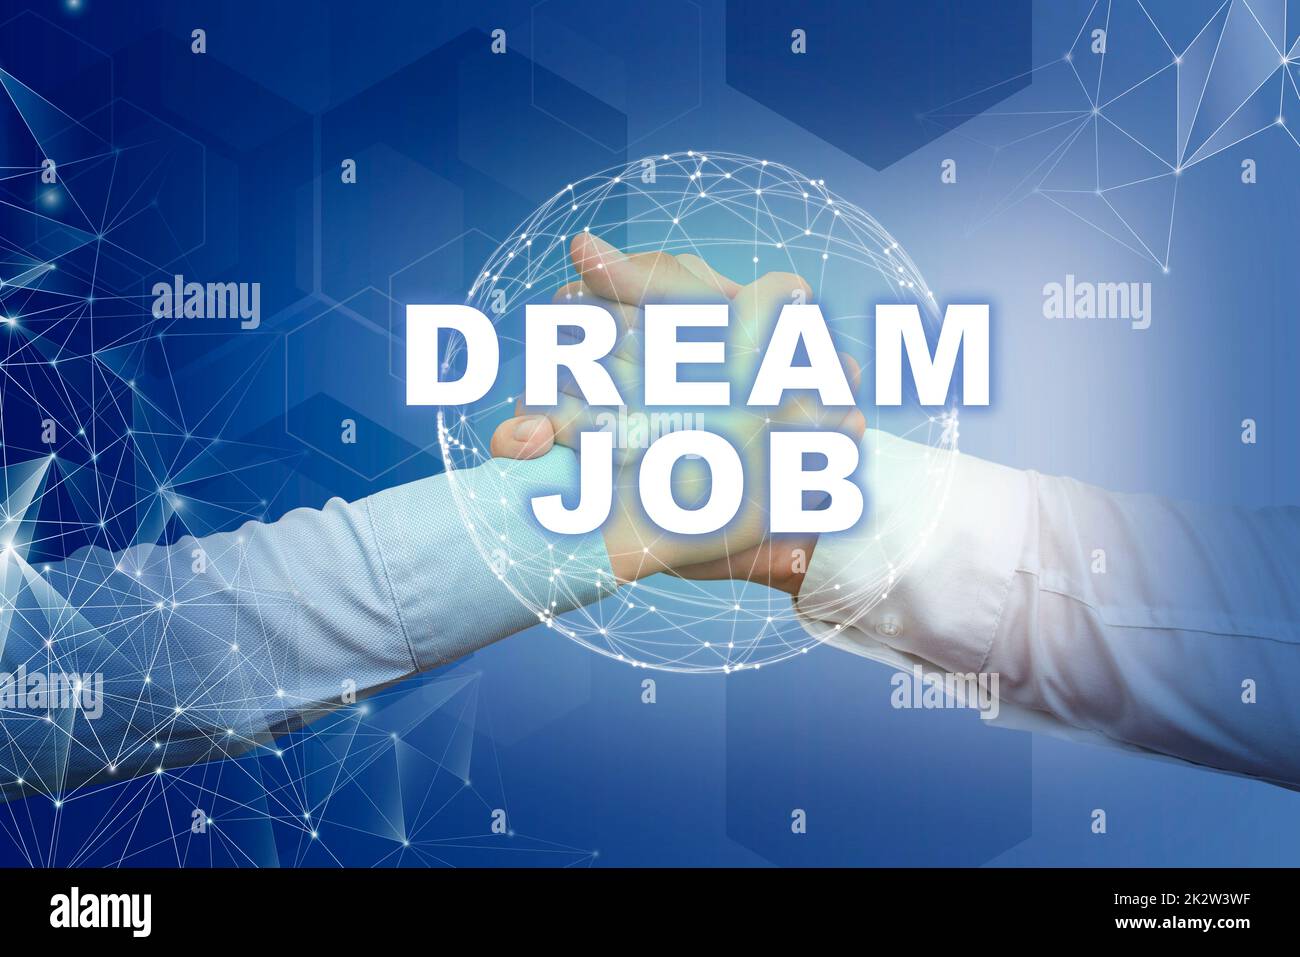 Affiche affichant Dream Job. Idée d'affaires un acte qui est payé par salaire et vous donne des mains haptiques qui se secouent symbolisant la mondialisation présentant le travail d'équipe. Banque D'Images